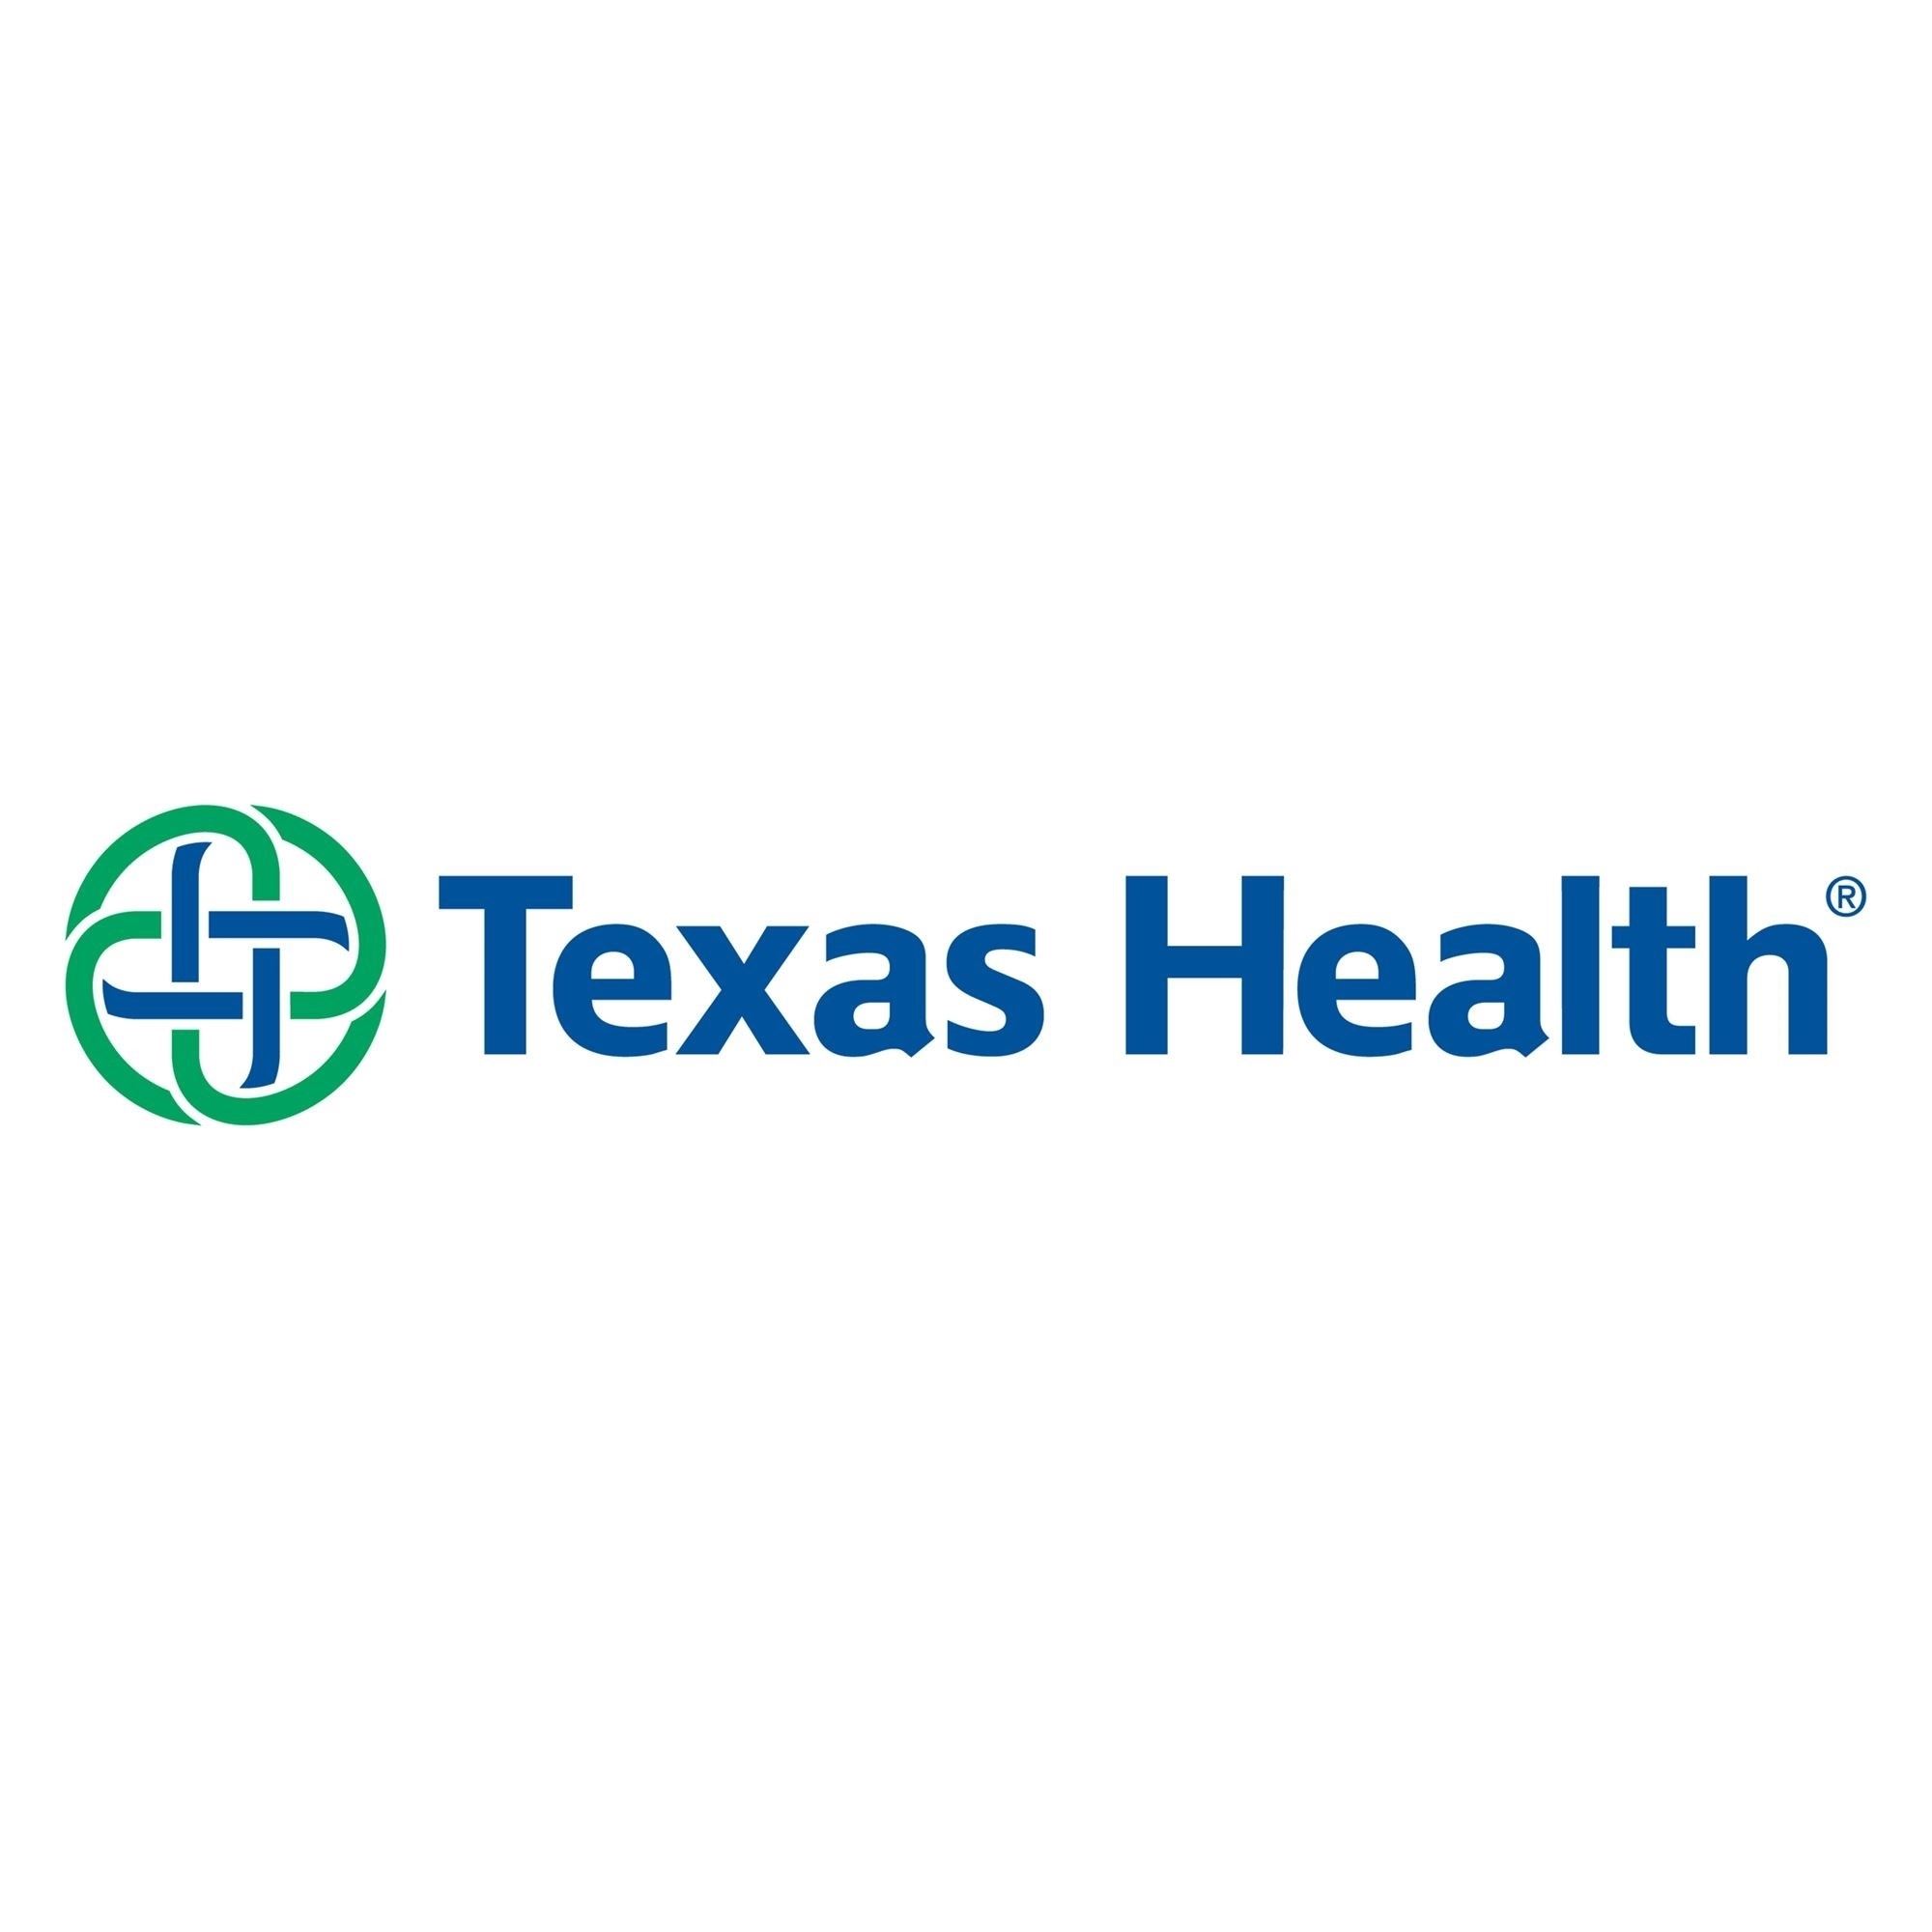 elinks texas health org